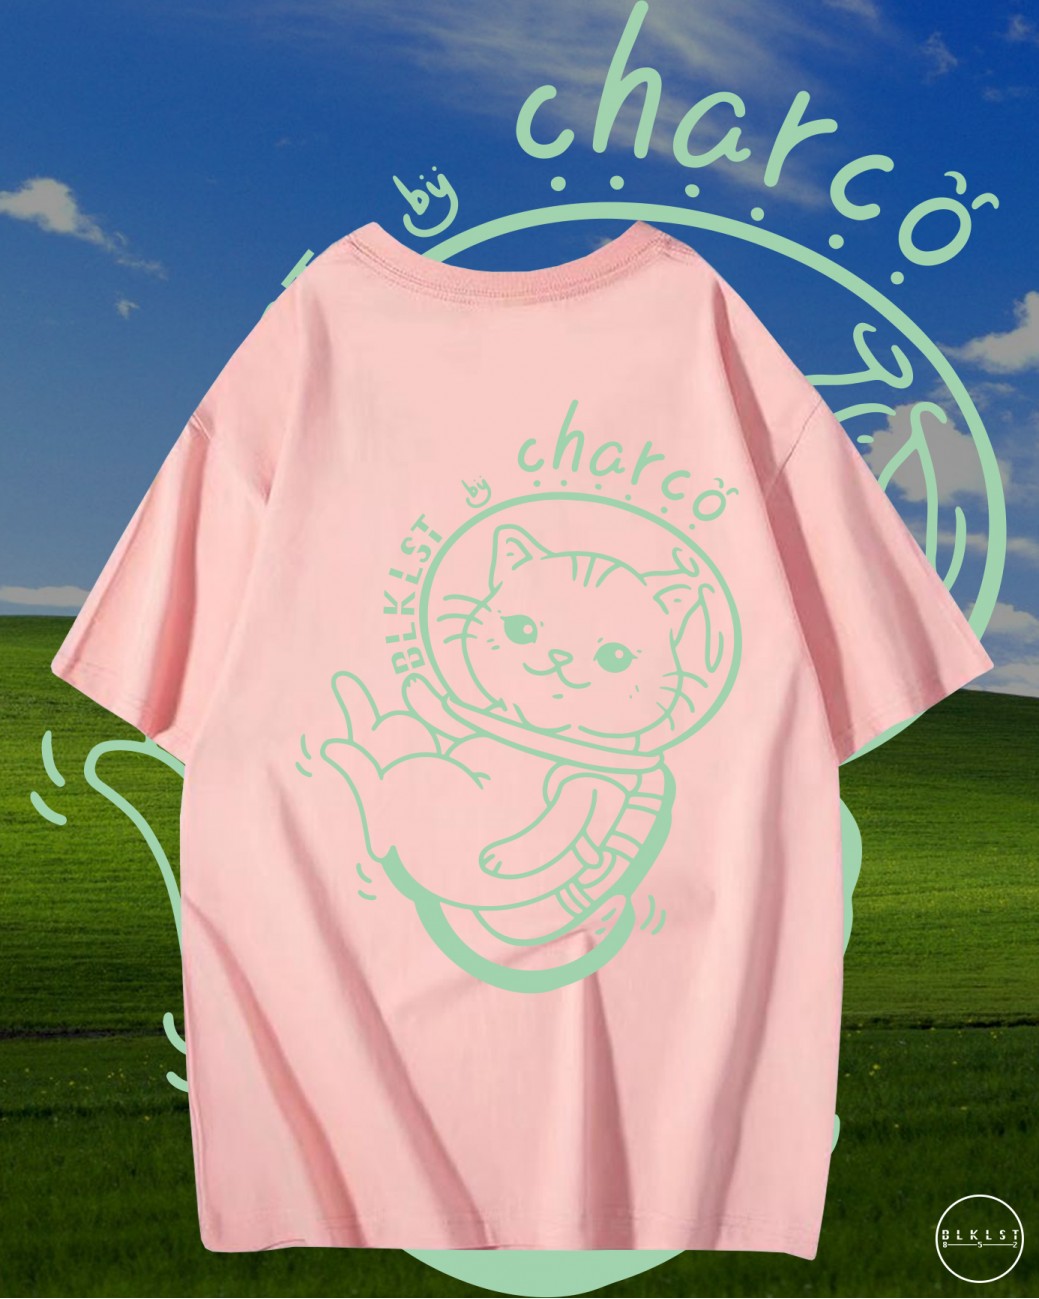 CHARCO 06 T恤